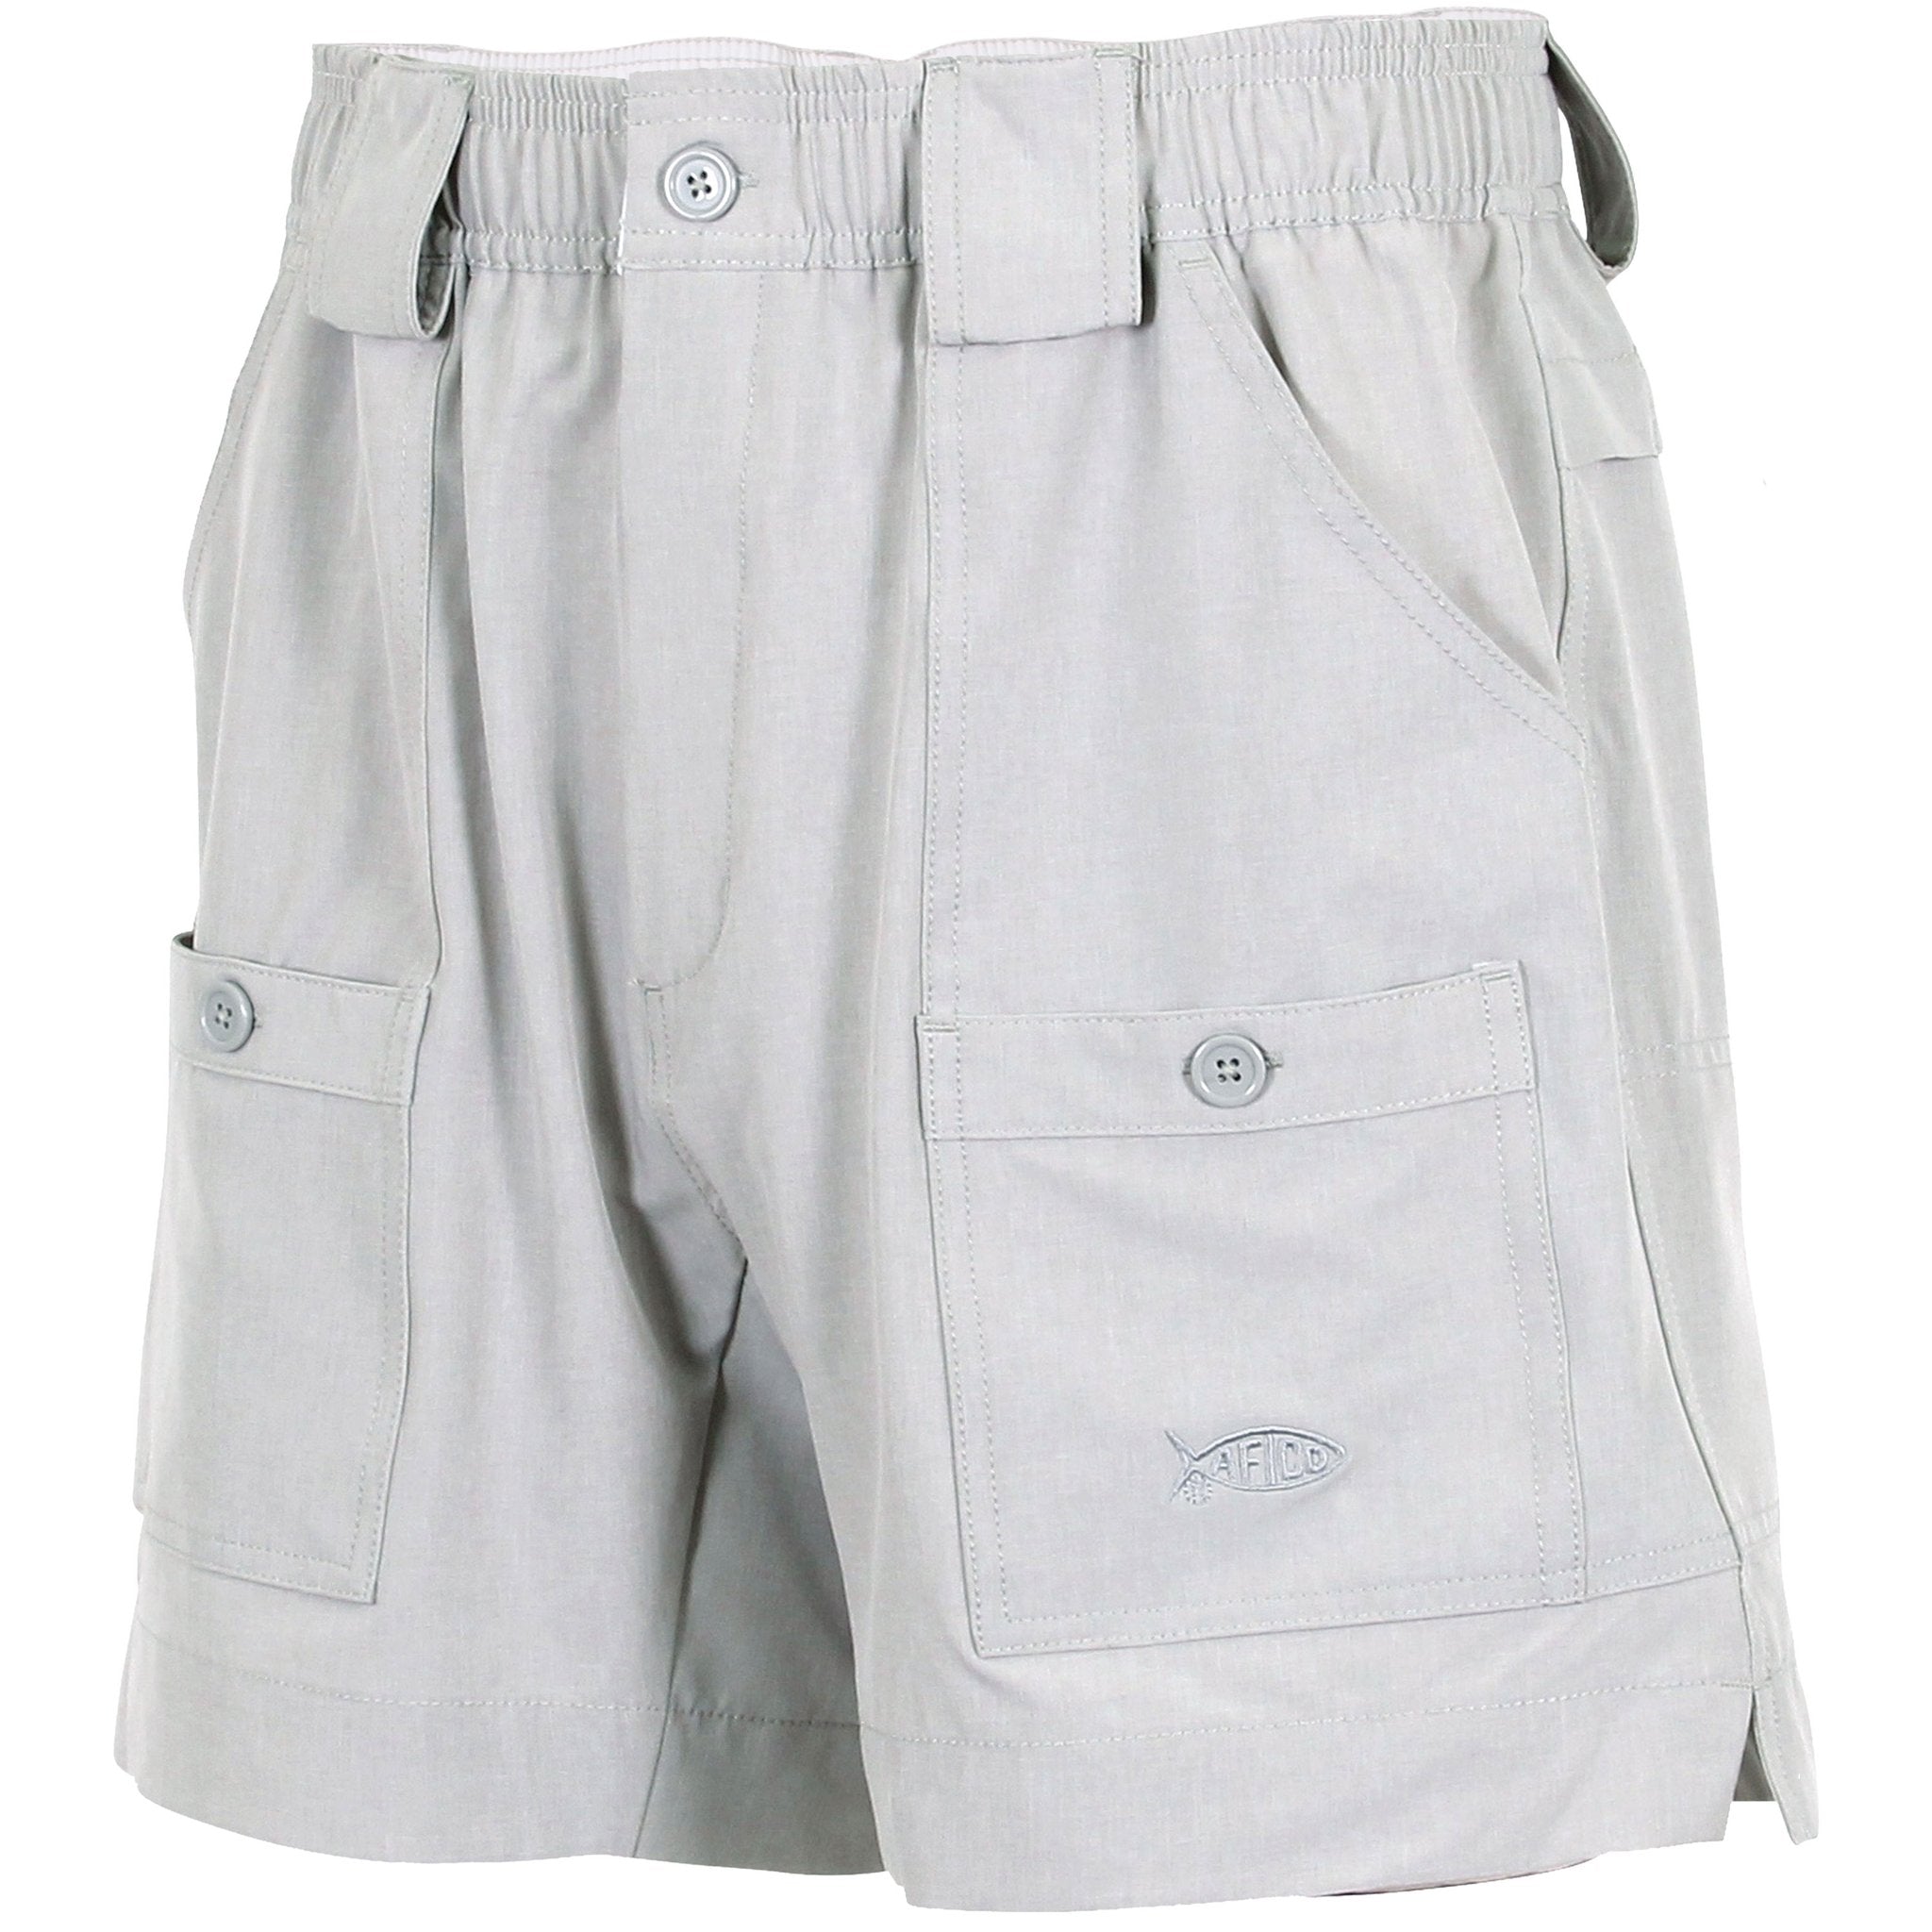 AFTCO Original Fishing Shorts - Silver - 36